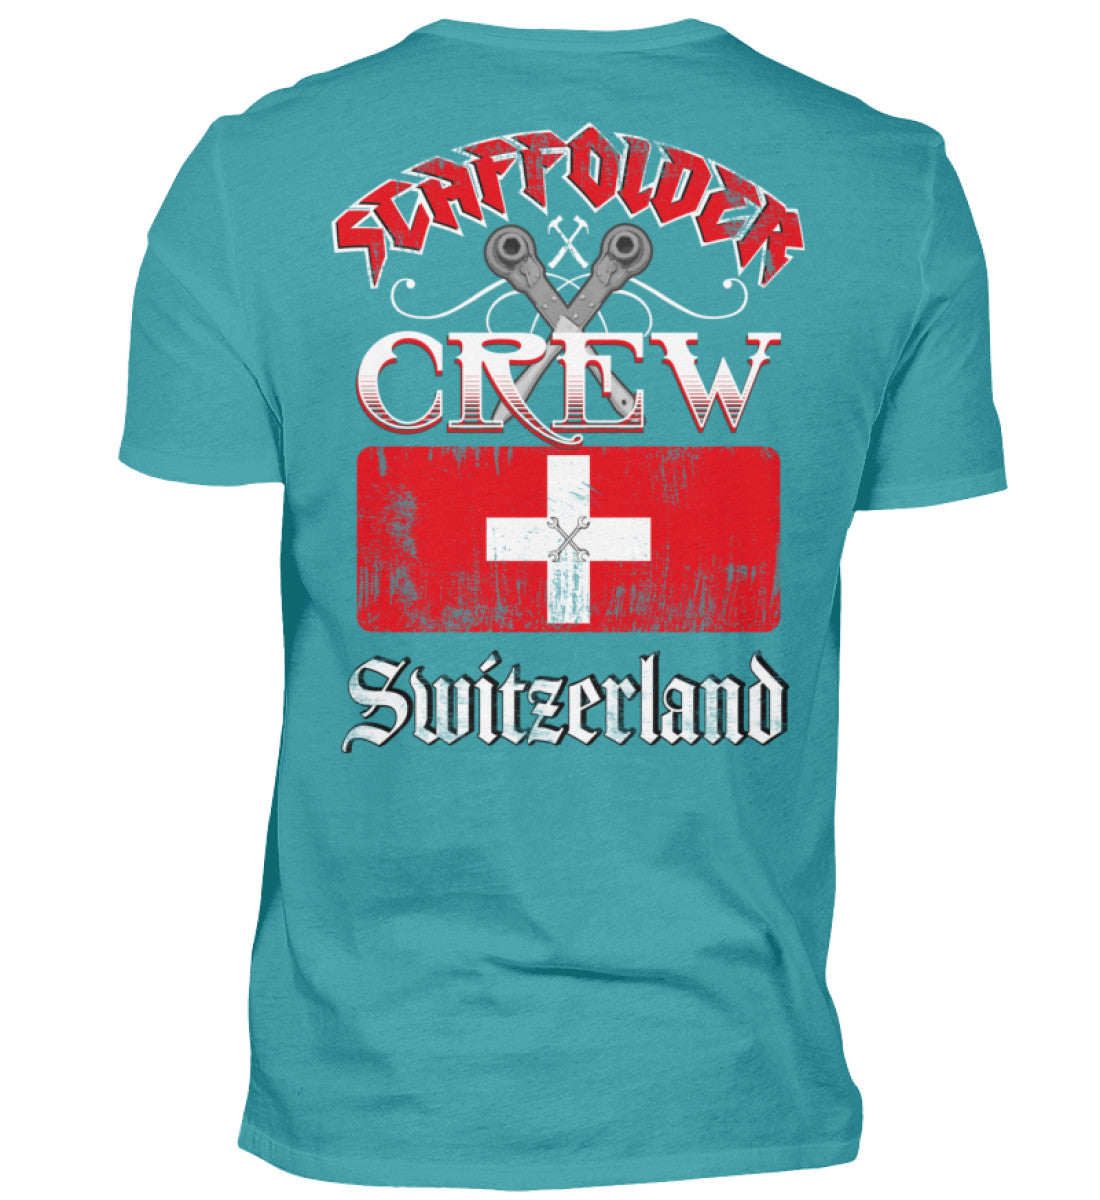 Gerüstbauer T-Shirt Scaffolder Crew Switzerland €24.95 Gerüstbauer - Shop >>